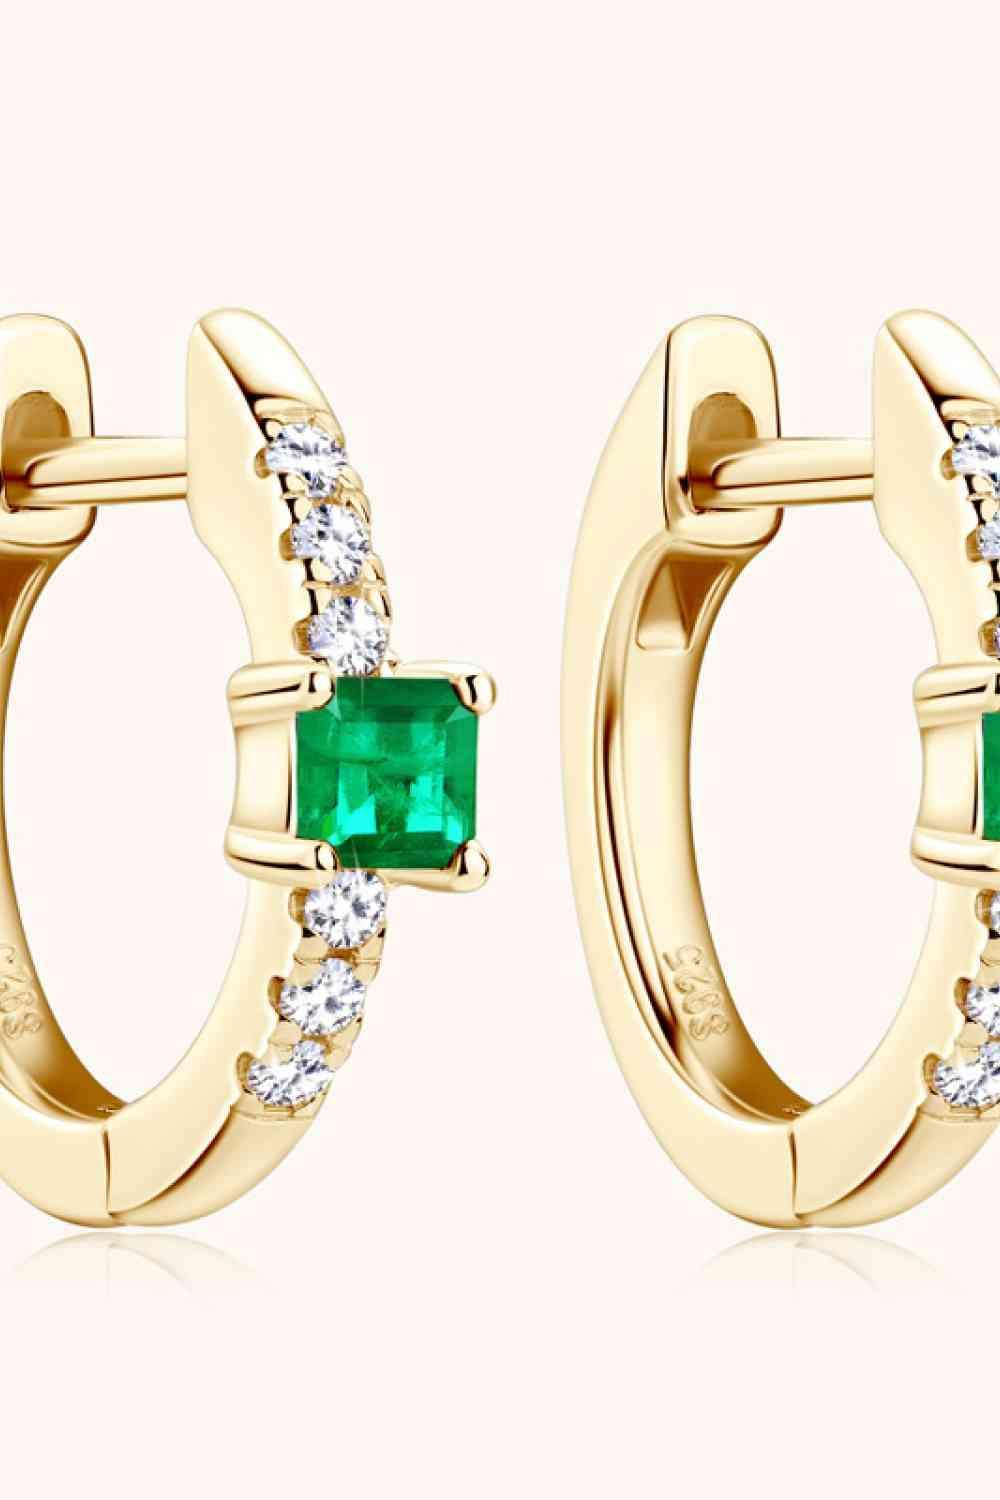 Lab-Grown Emerald Earrings - Bona Fide Fashion